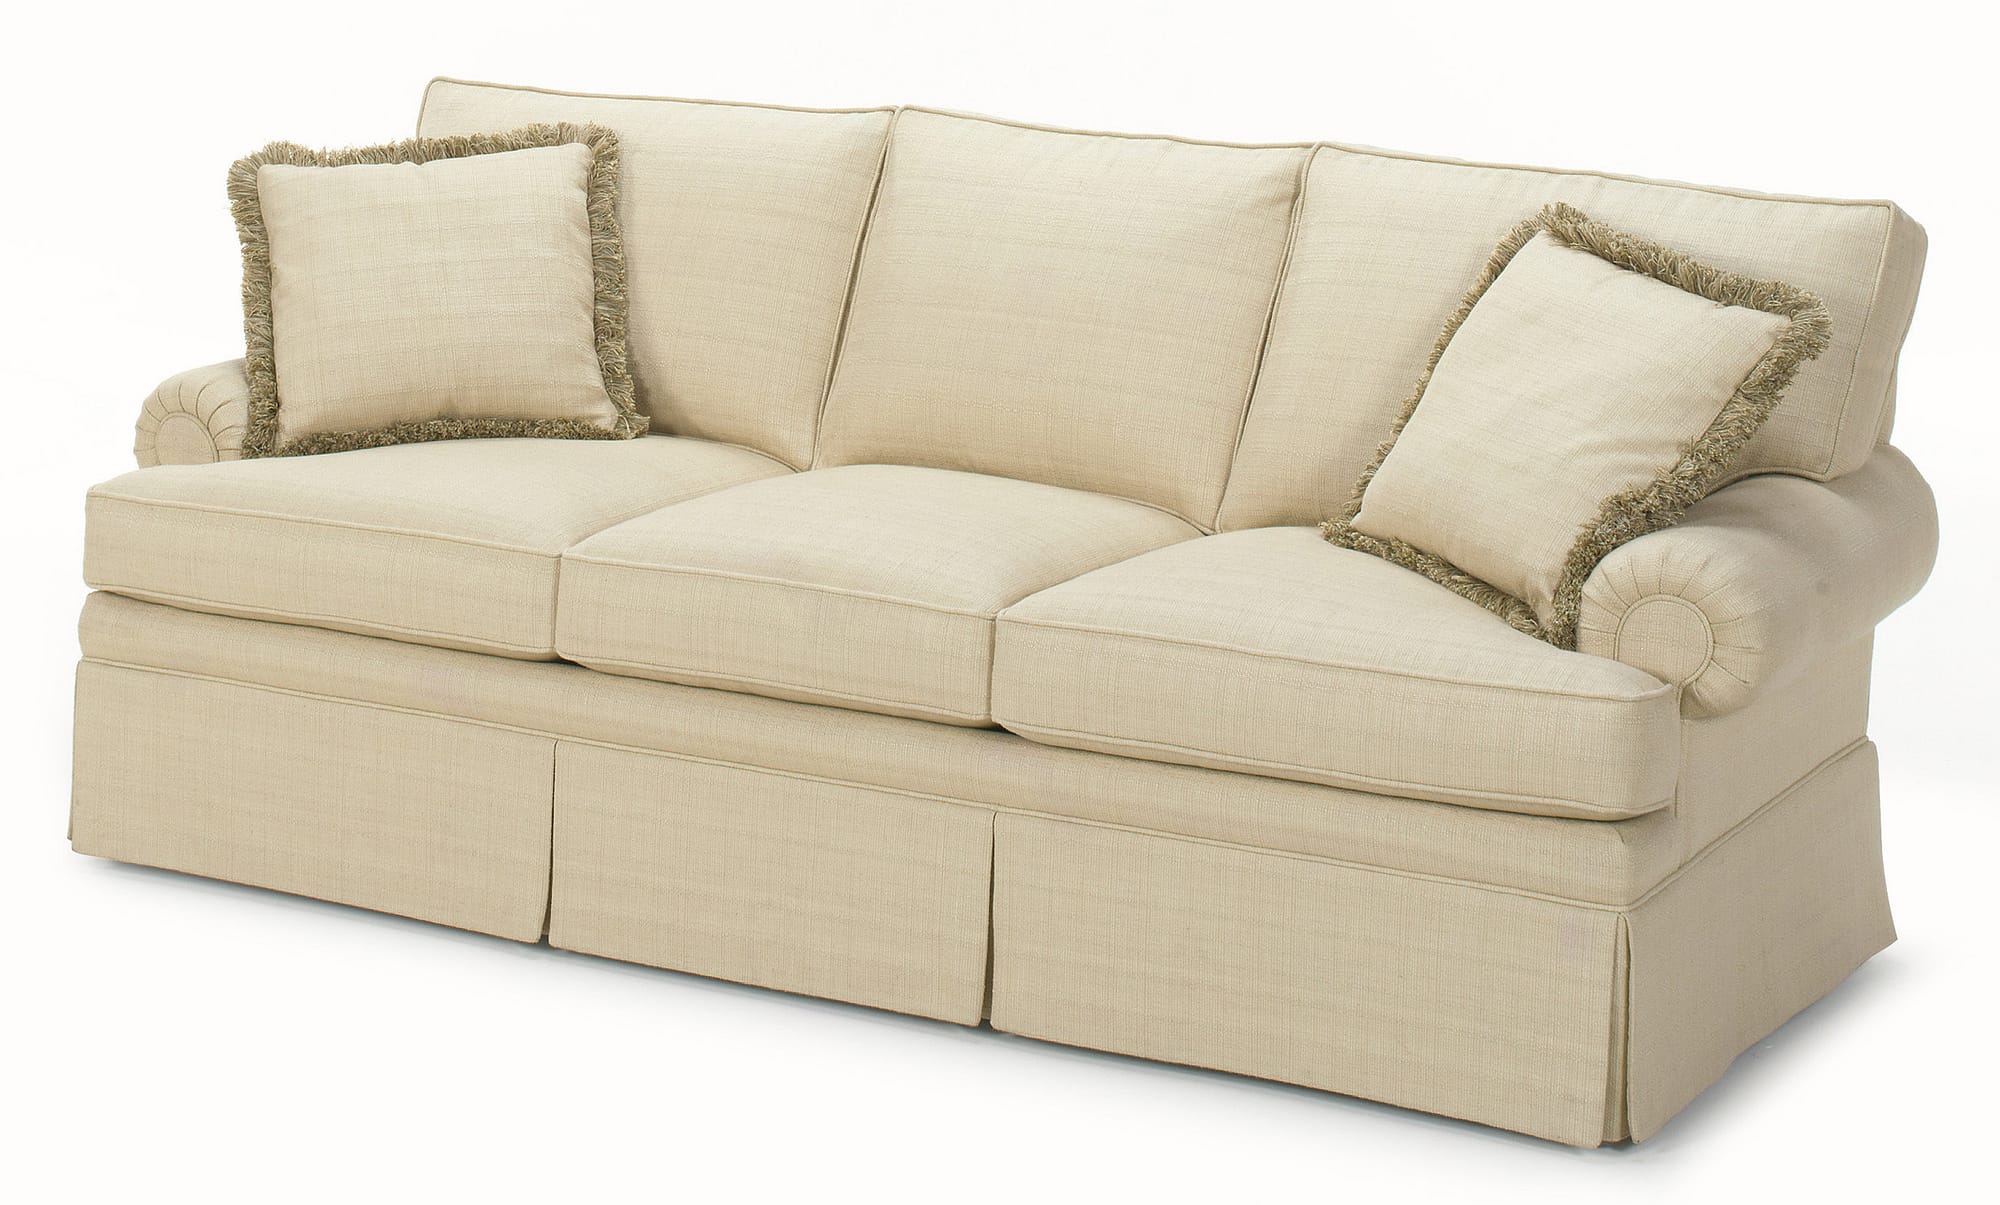 lawson sofa